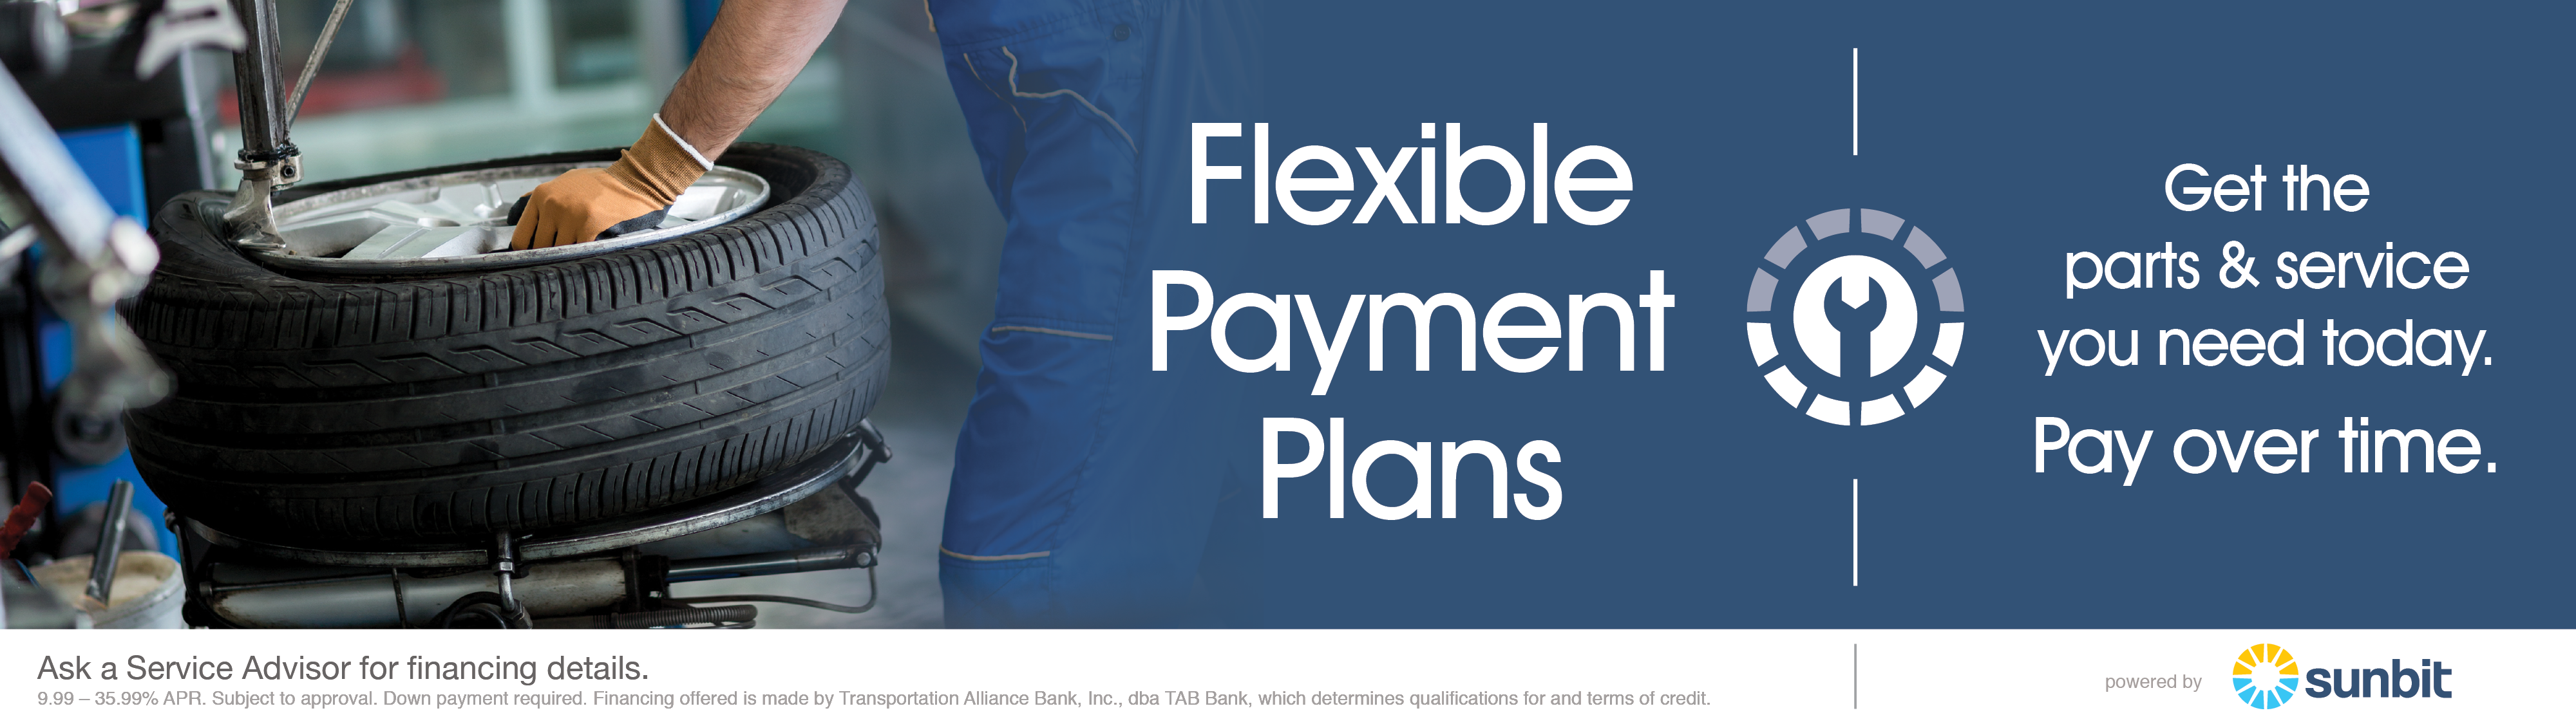 Service & Parts Flexible Payments